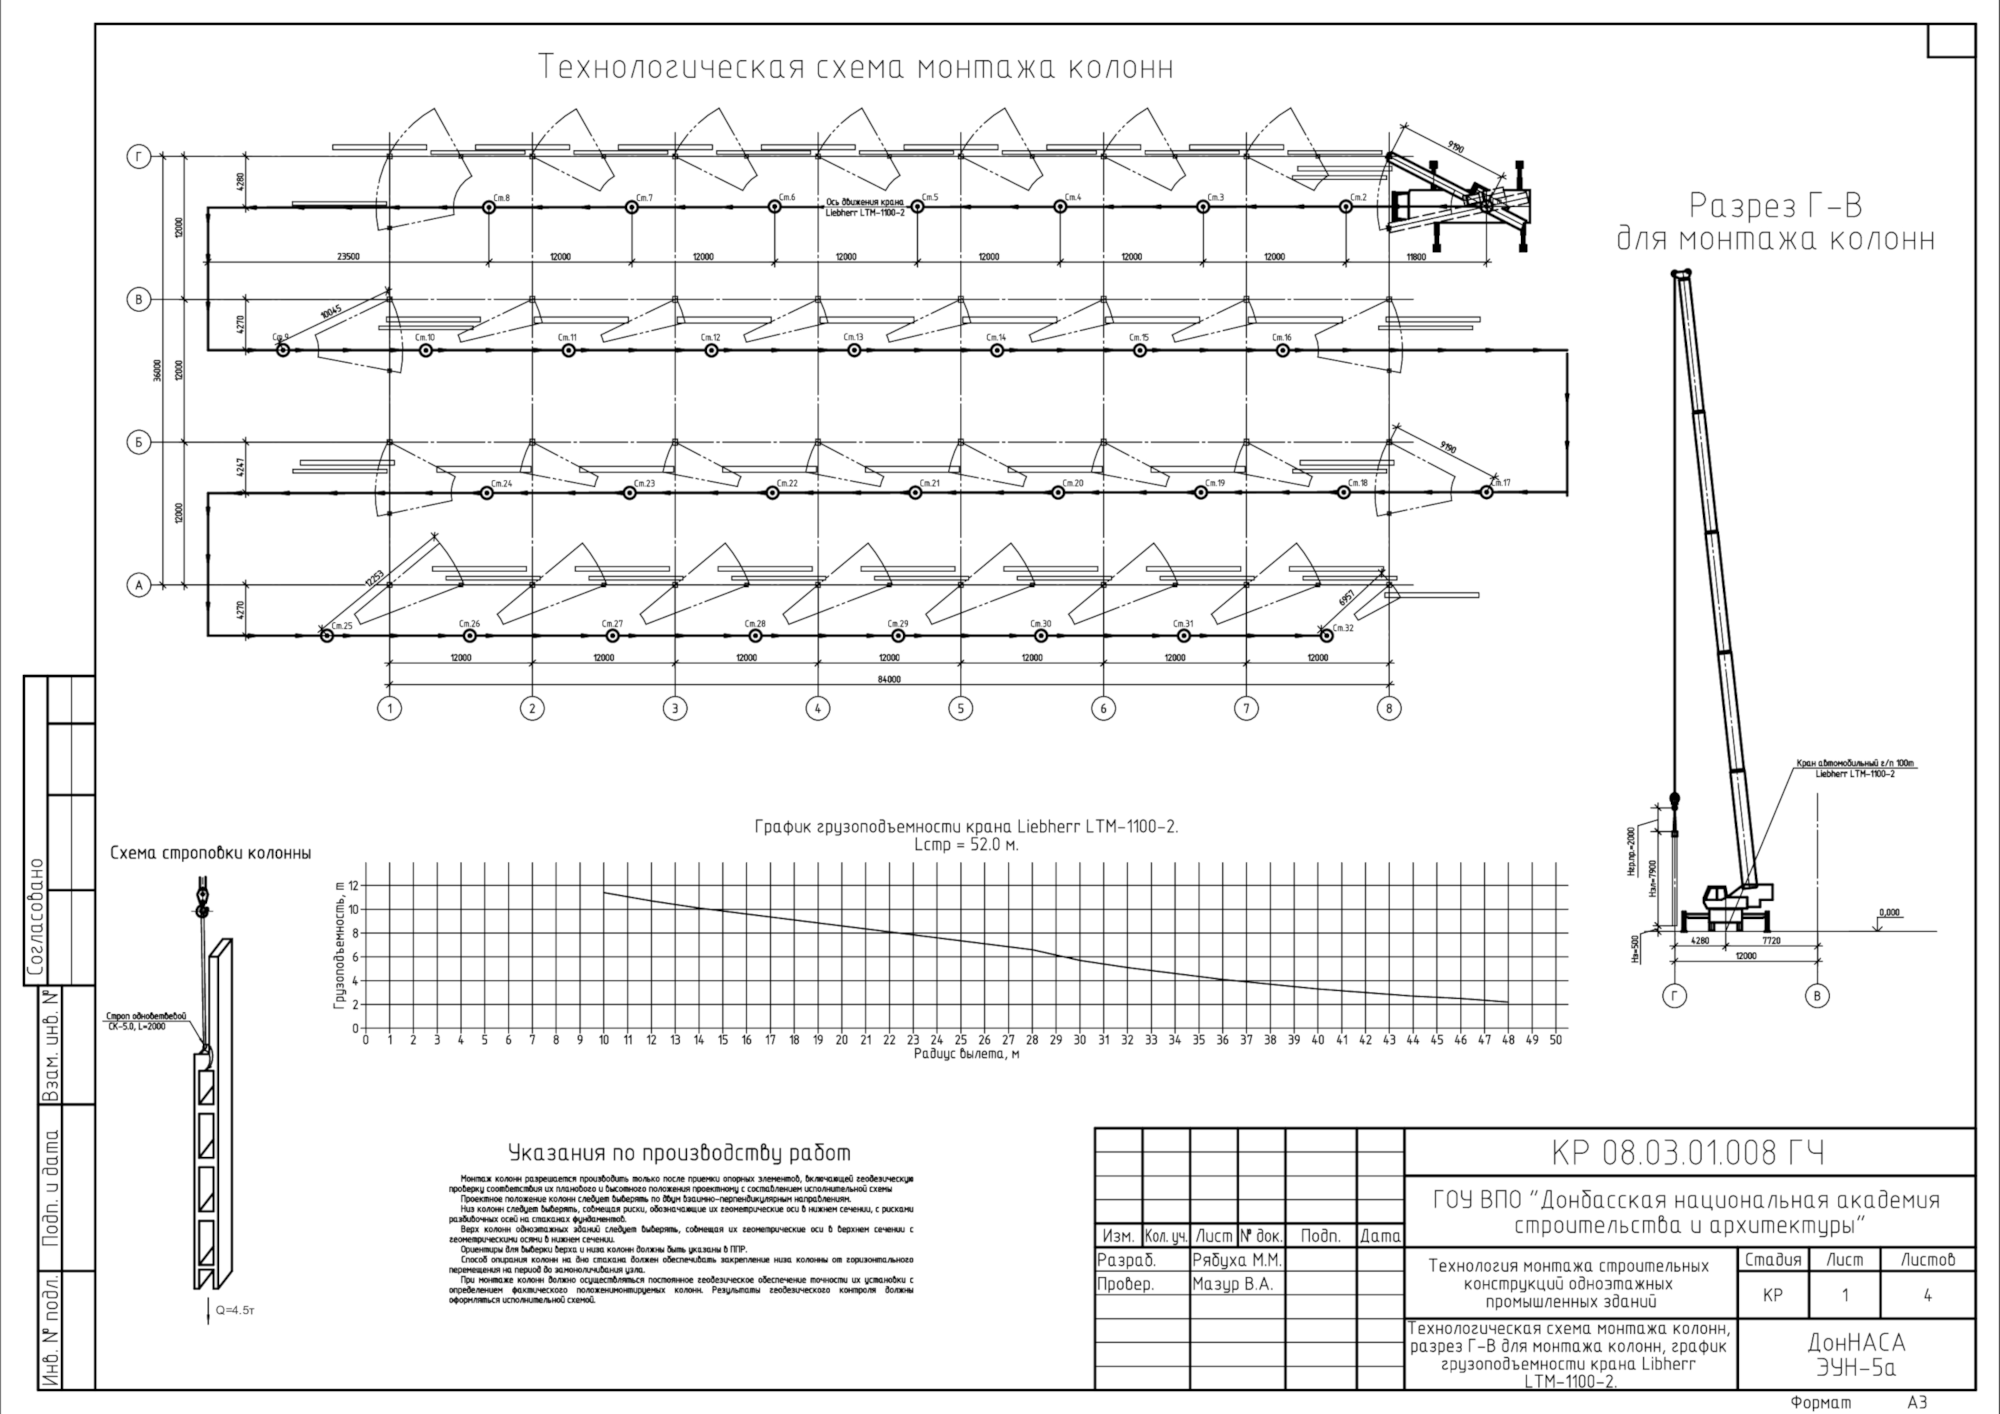 Фрагмент конкурсной работы Маргариты Рябухи: схемы монтажа строительных конструкций одноэтажного промышленного здания